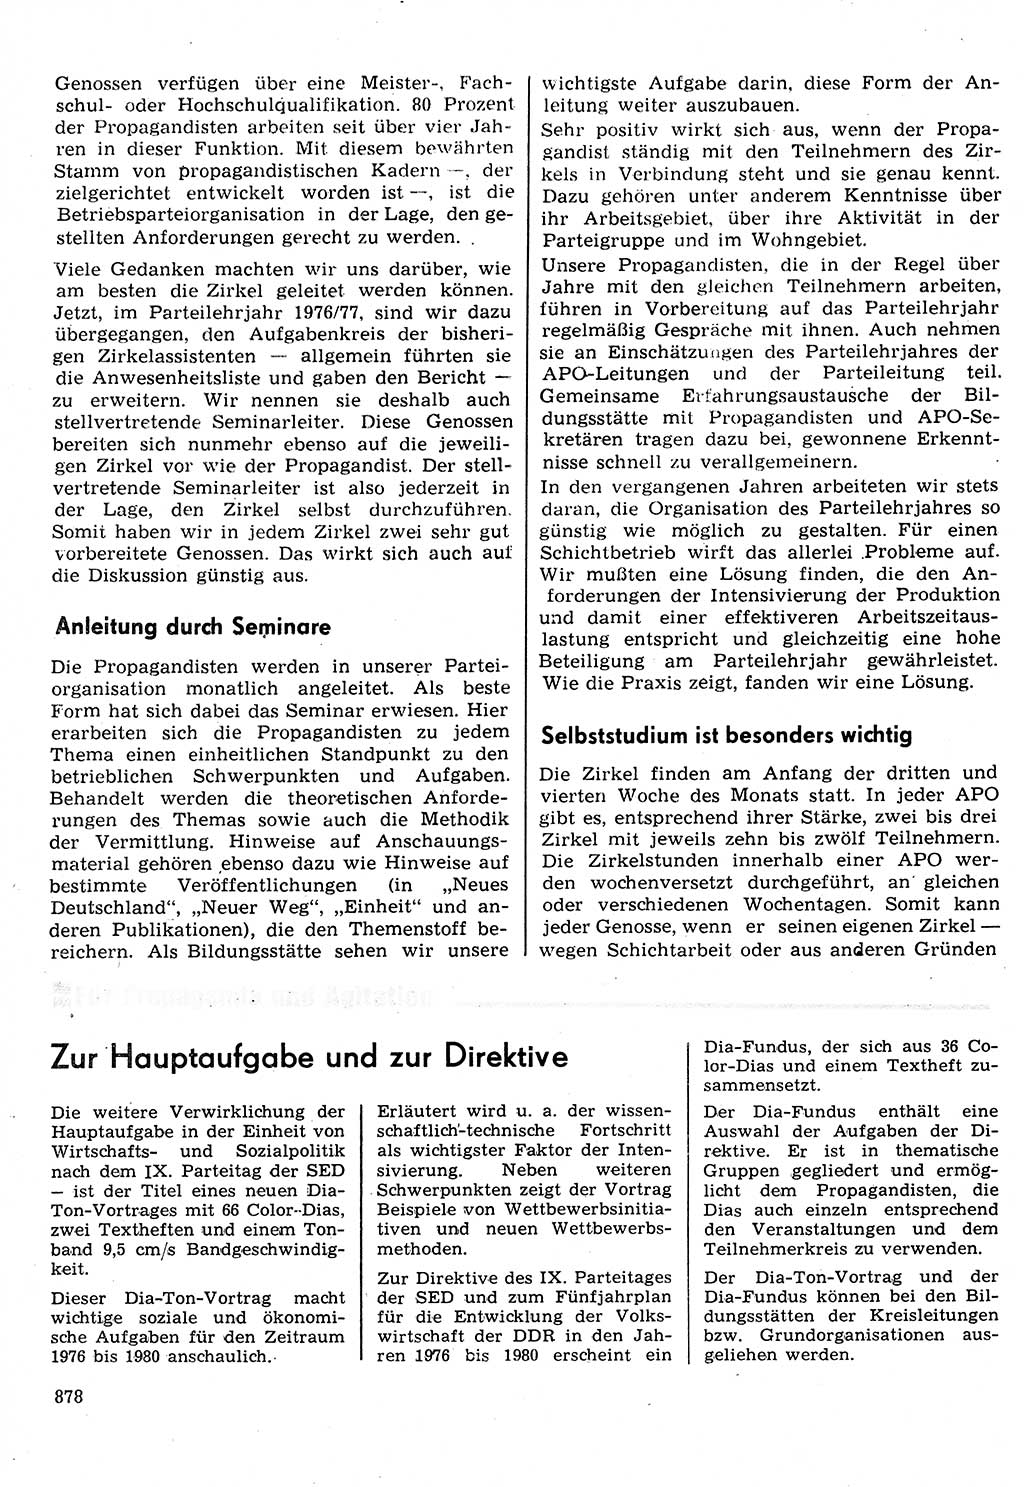 Neuer Weg (NW), Organ des Zentralkomitees (ZK) der SED (Sozialistische Einheitspartei Deutschlands) für Fragen des Parteilebens, 31. Jahrgang [Deutsche Demokratische Republik (DDR)] 1976, Seite 878 (NW ZK SED DDR 1976, S. 878)